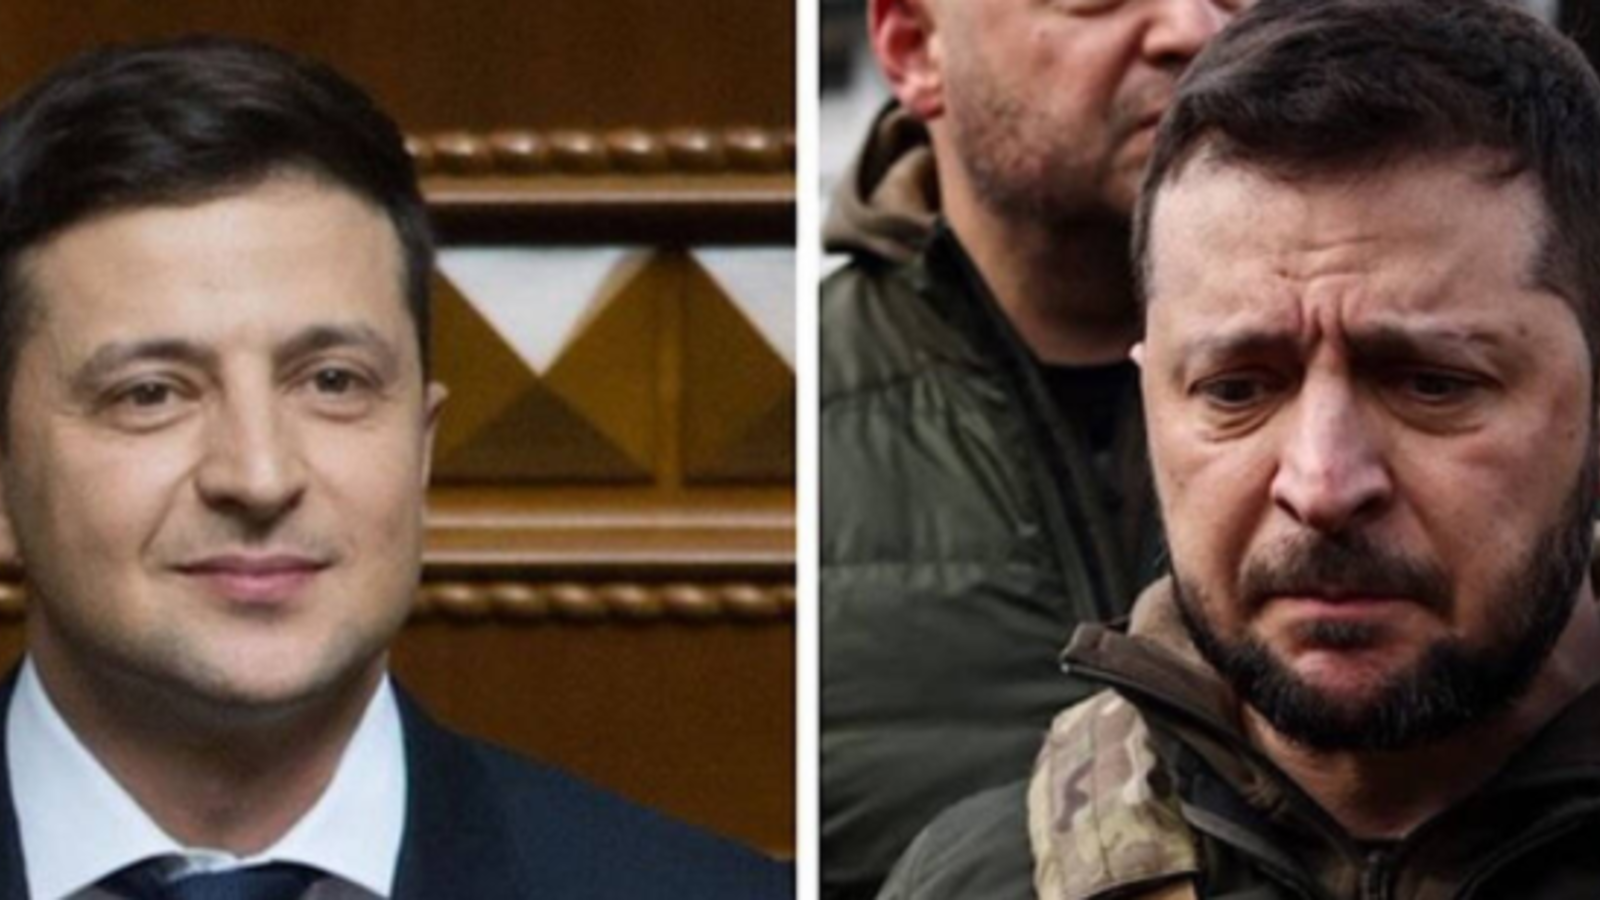 Ukraine Twitter Nutzer schockiert über Selenskyjs Aussehen oe at